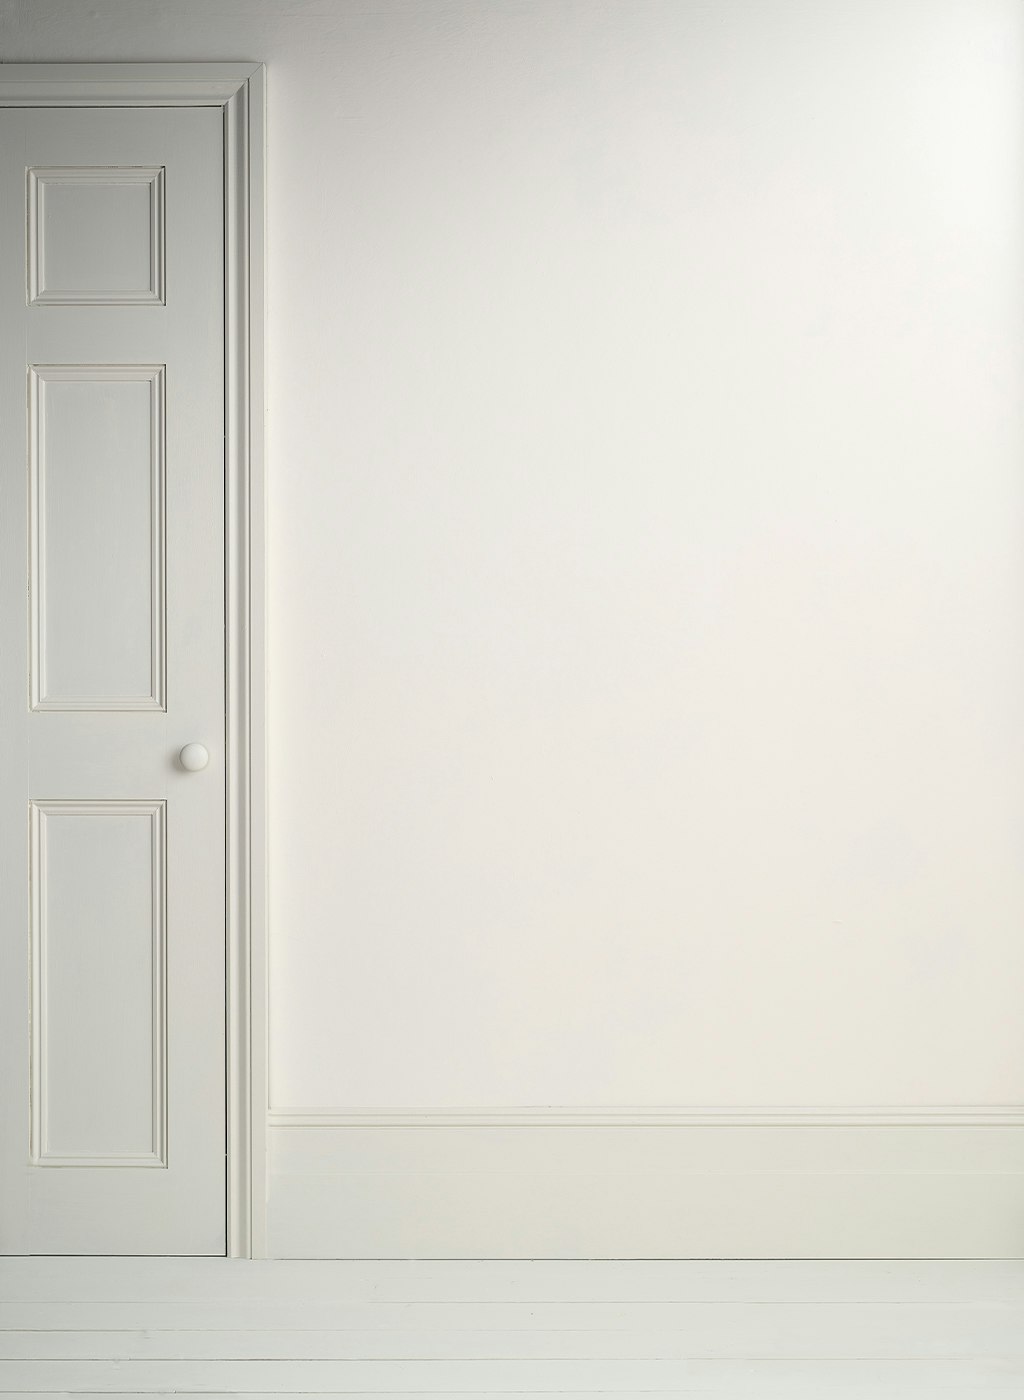 Annie Sloan Wall Paint Pure, Vitaste vitt, Väggfärg, Glada ungmön